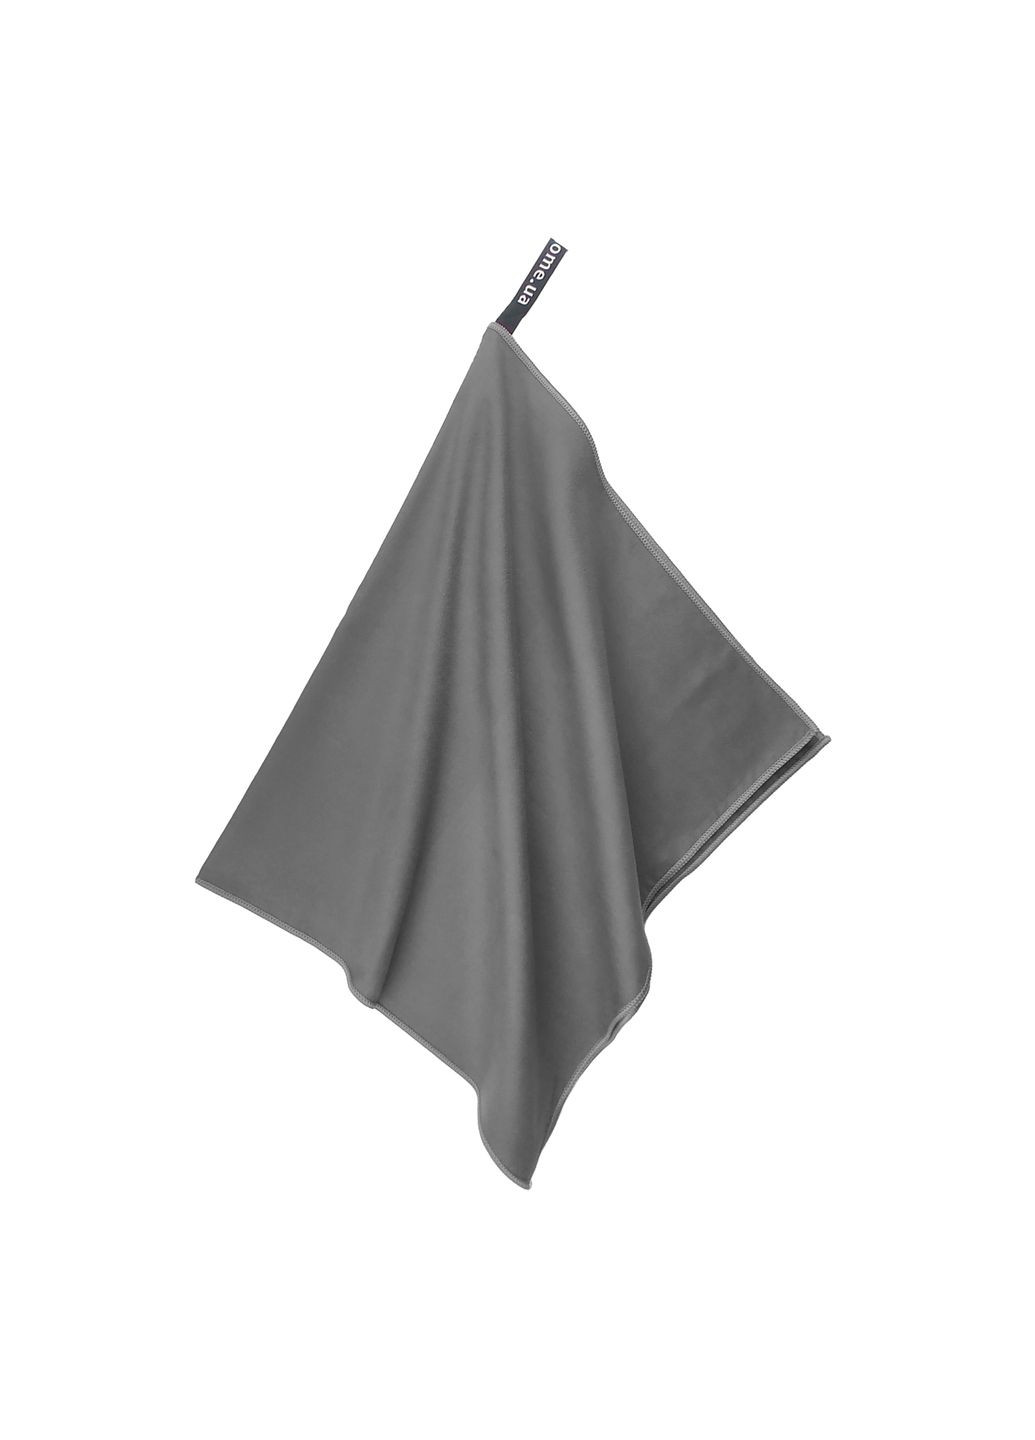 Love You полотенце спортивное серое 80х180 серый производство - Китай